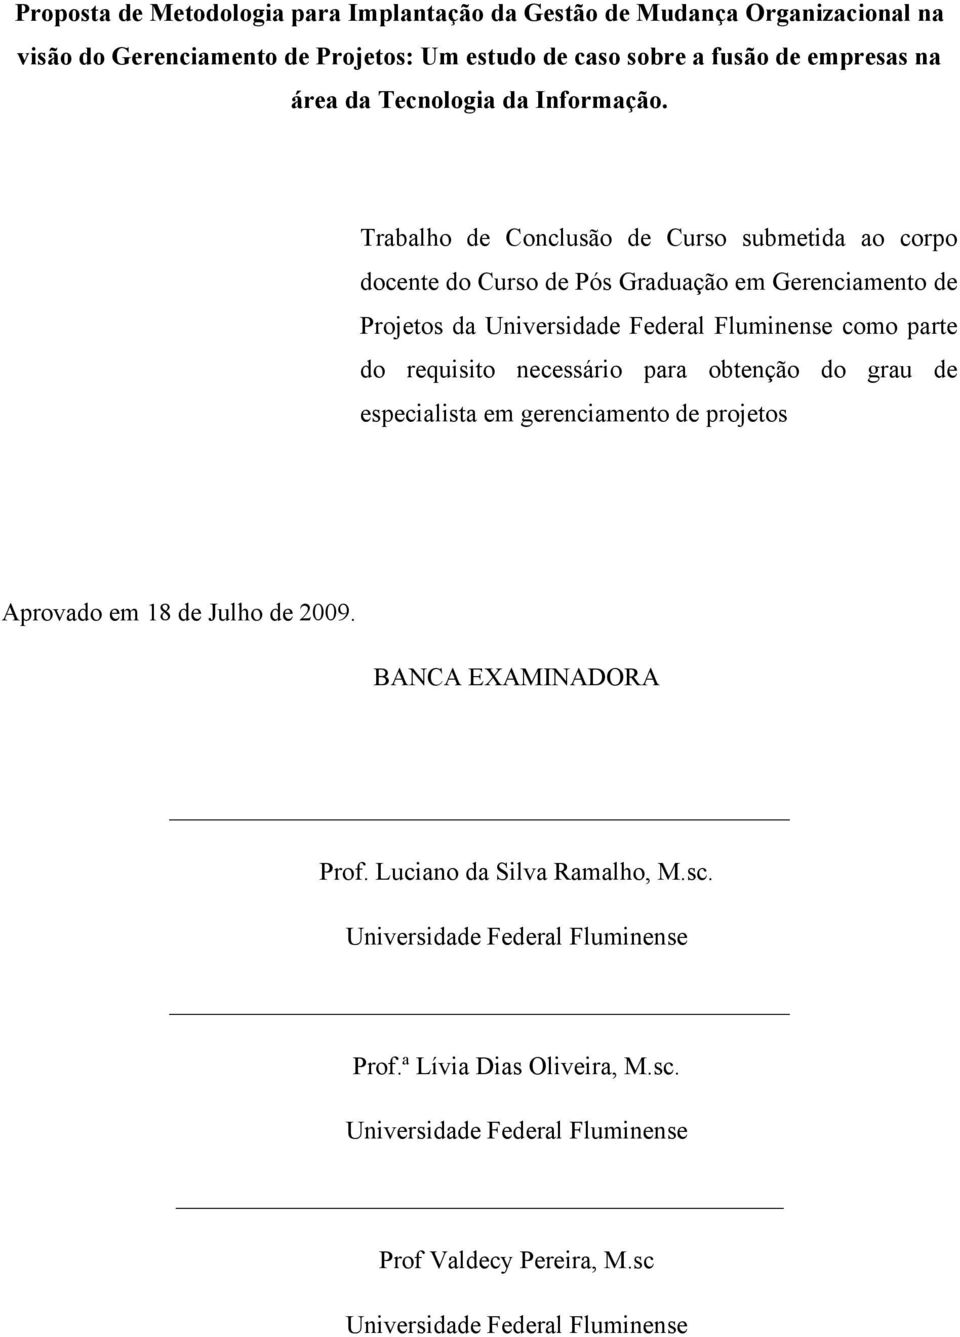 Trabalho de Conclusão de Curso submetida ao corpo docente do Curso de Pós Graduação em Gerenciamento de Projetos da Universidade Federal Fluminense como parte do requisito